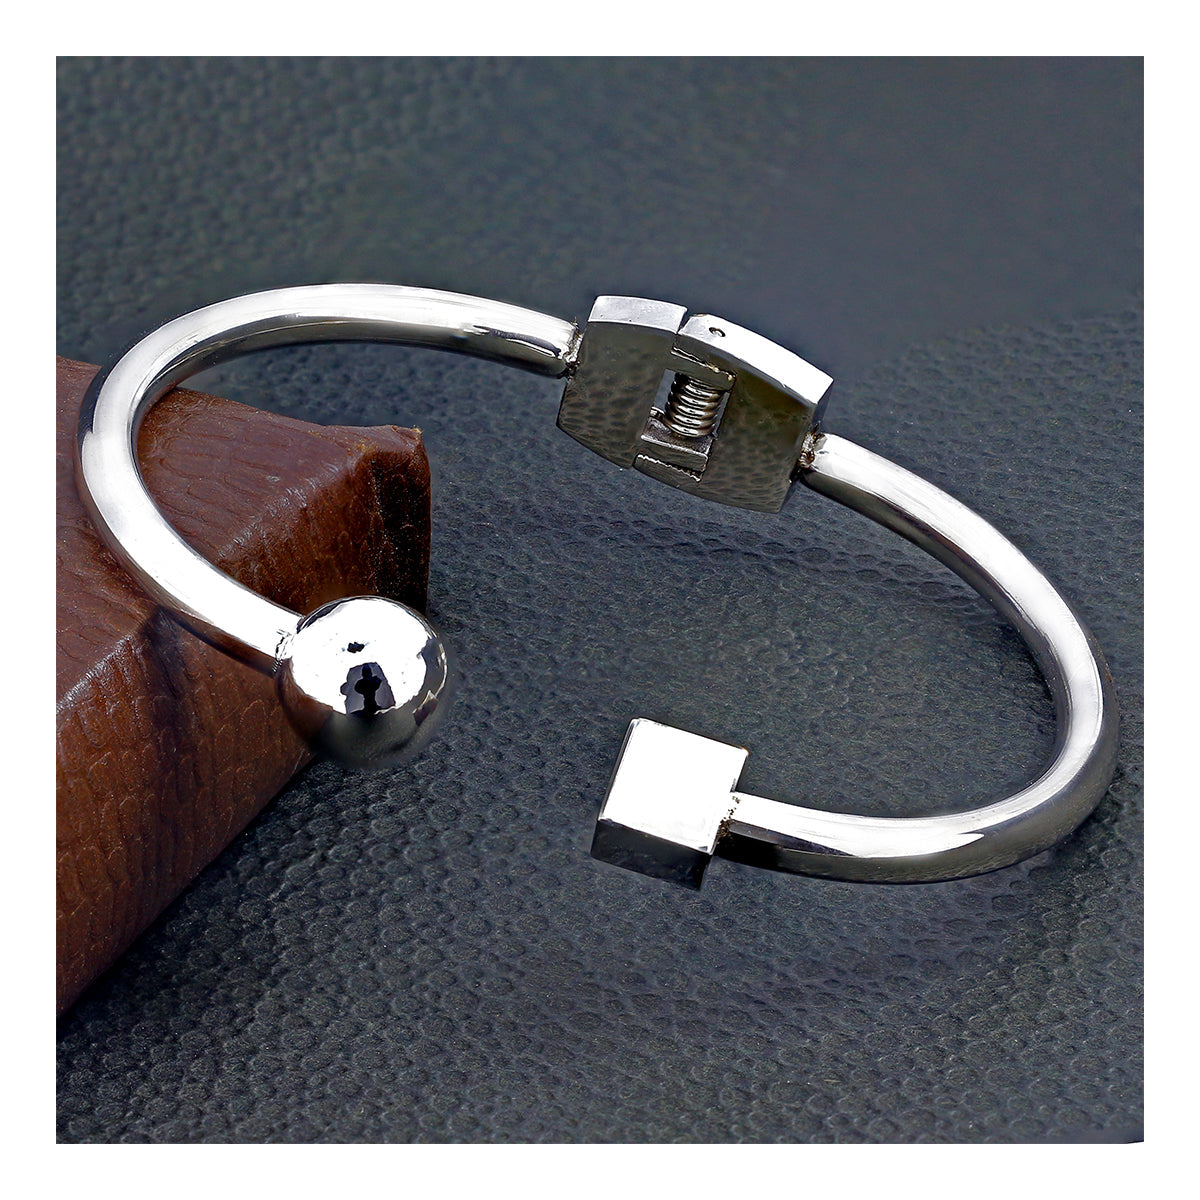 Designer Stainless Steel Cuff Kada Bangle Bracelet For Girls Women